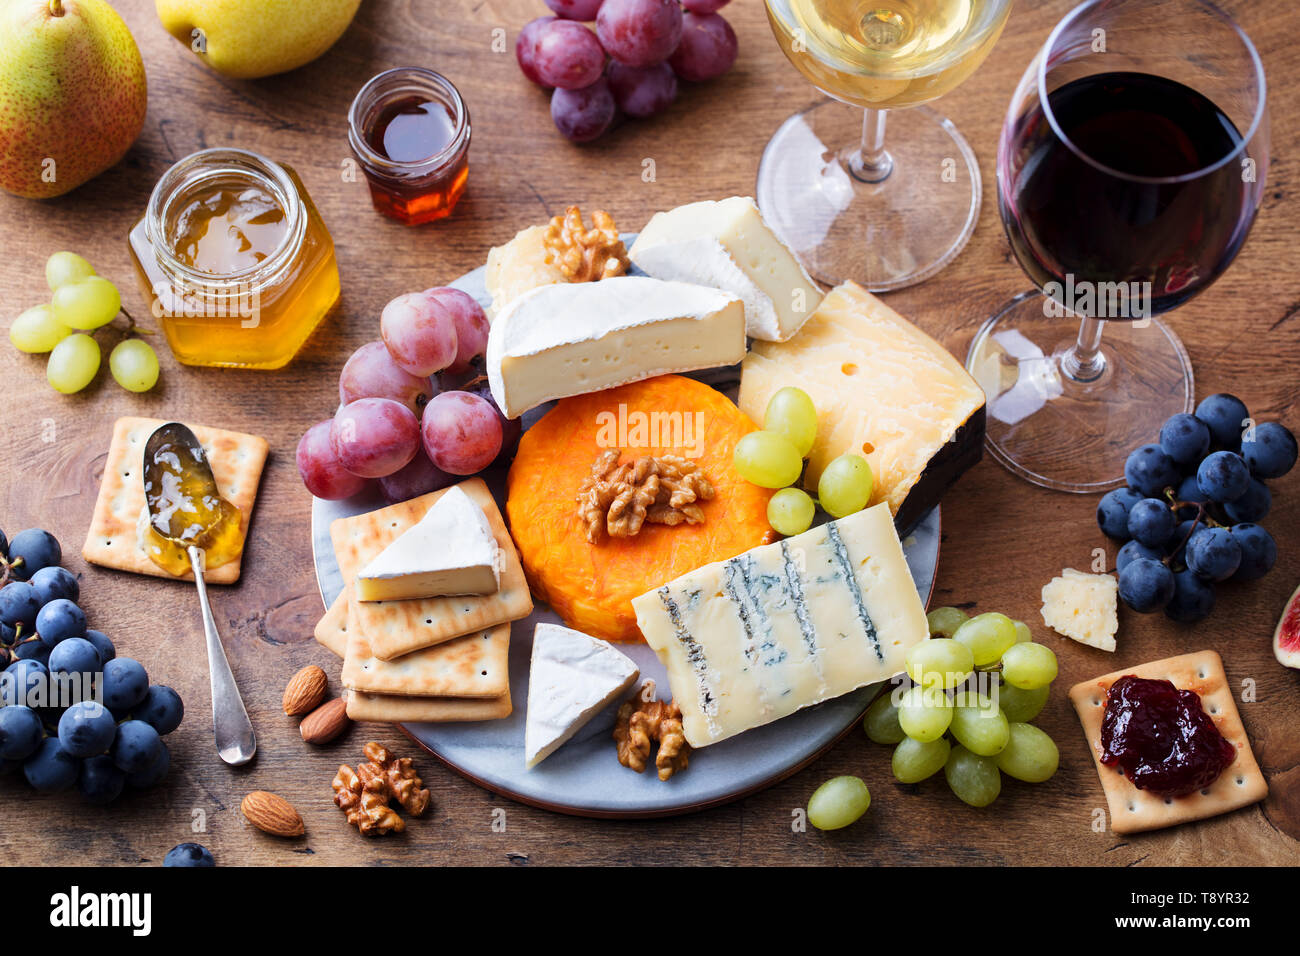 Assortiment de fromages, raisins à vin rouge et blanc dans les verres. Fond de bois. Vue d'en haut. Banque D'Images